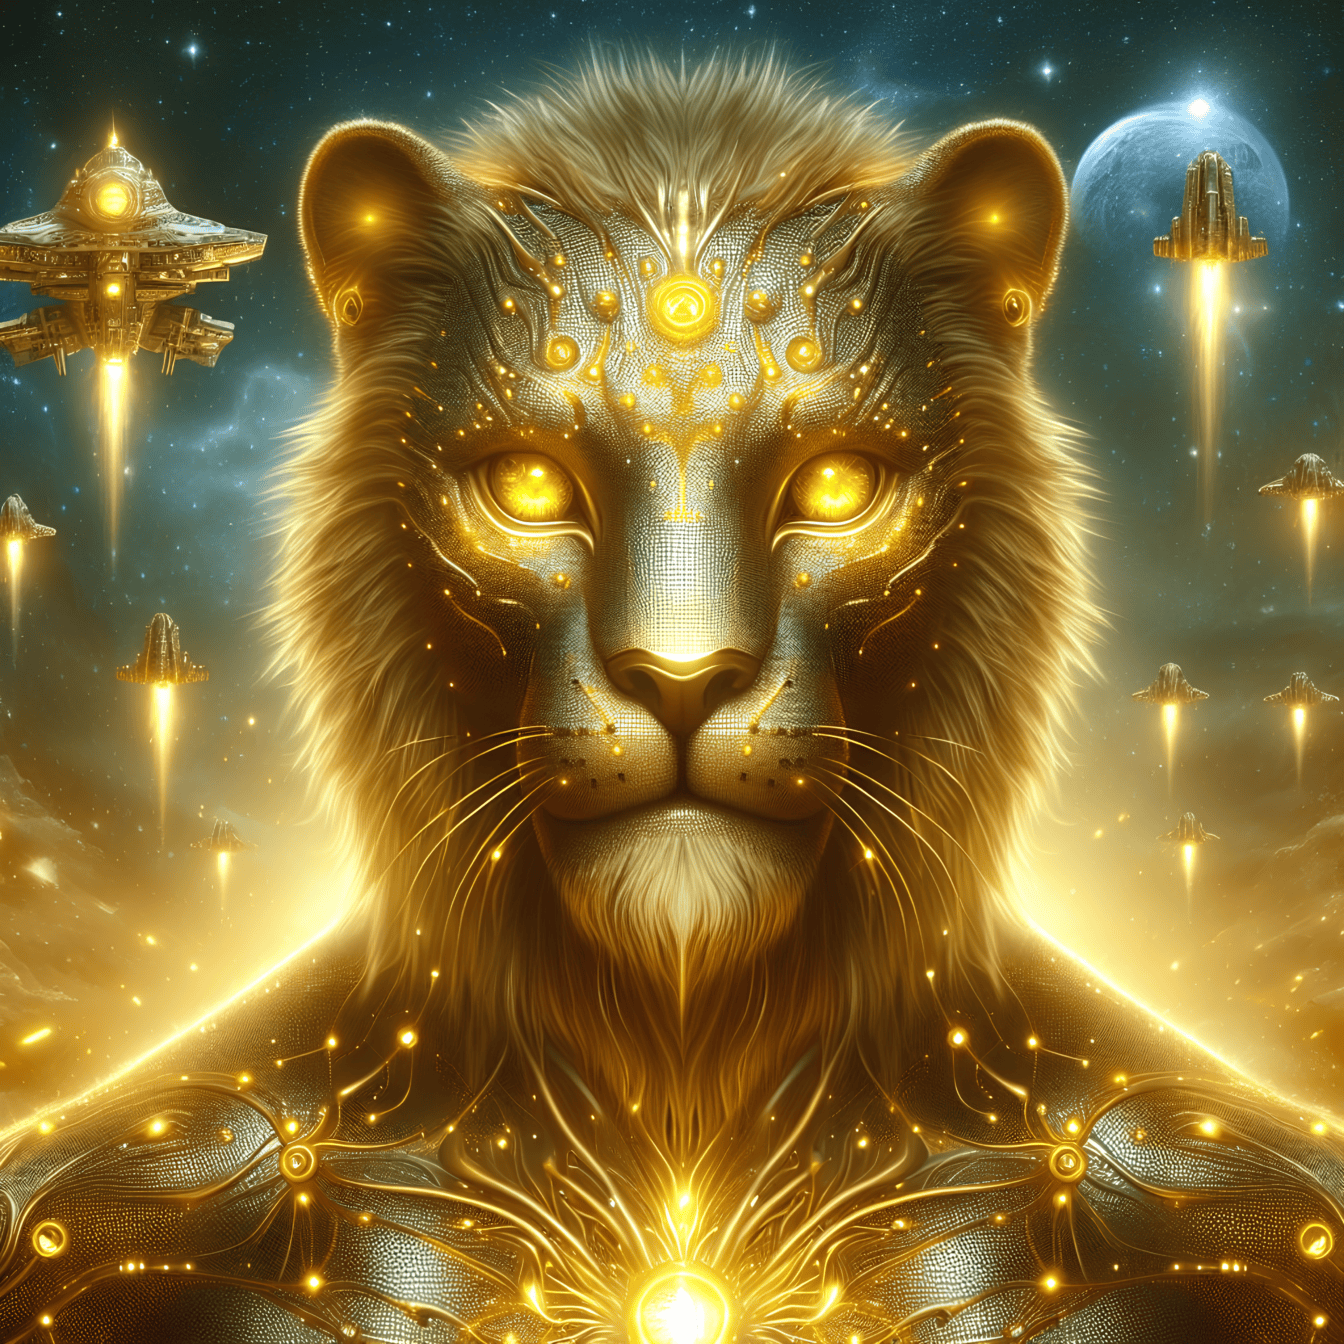 Đồ họa kỹ thuật số của một con sư tử ngoài hành tinh vàng với đôi mắt màu vàng sáng bóng